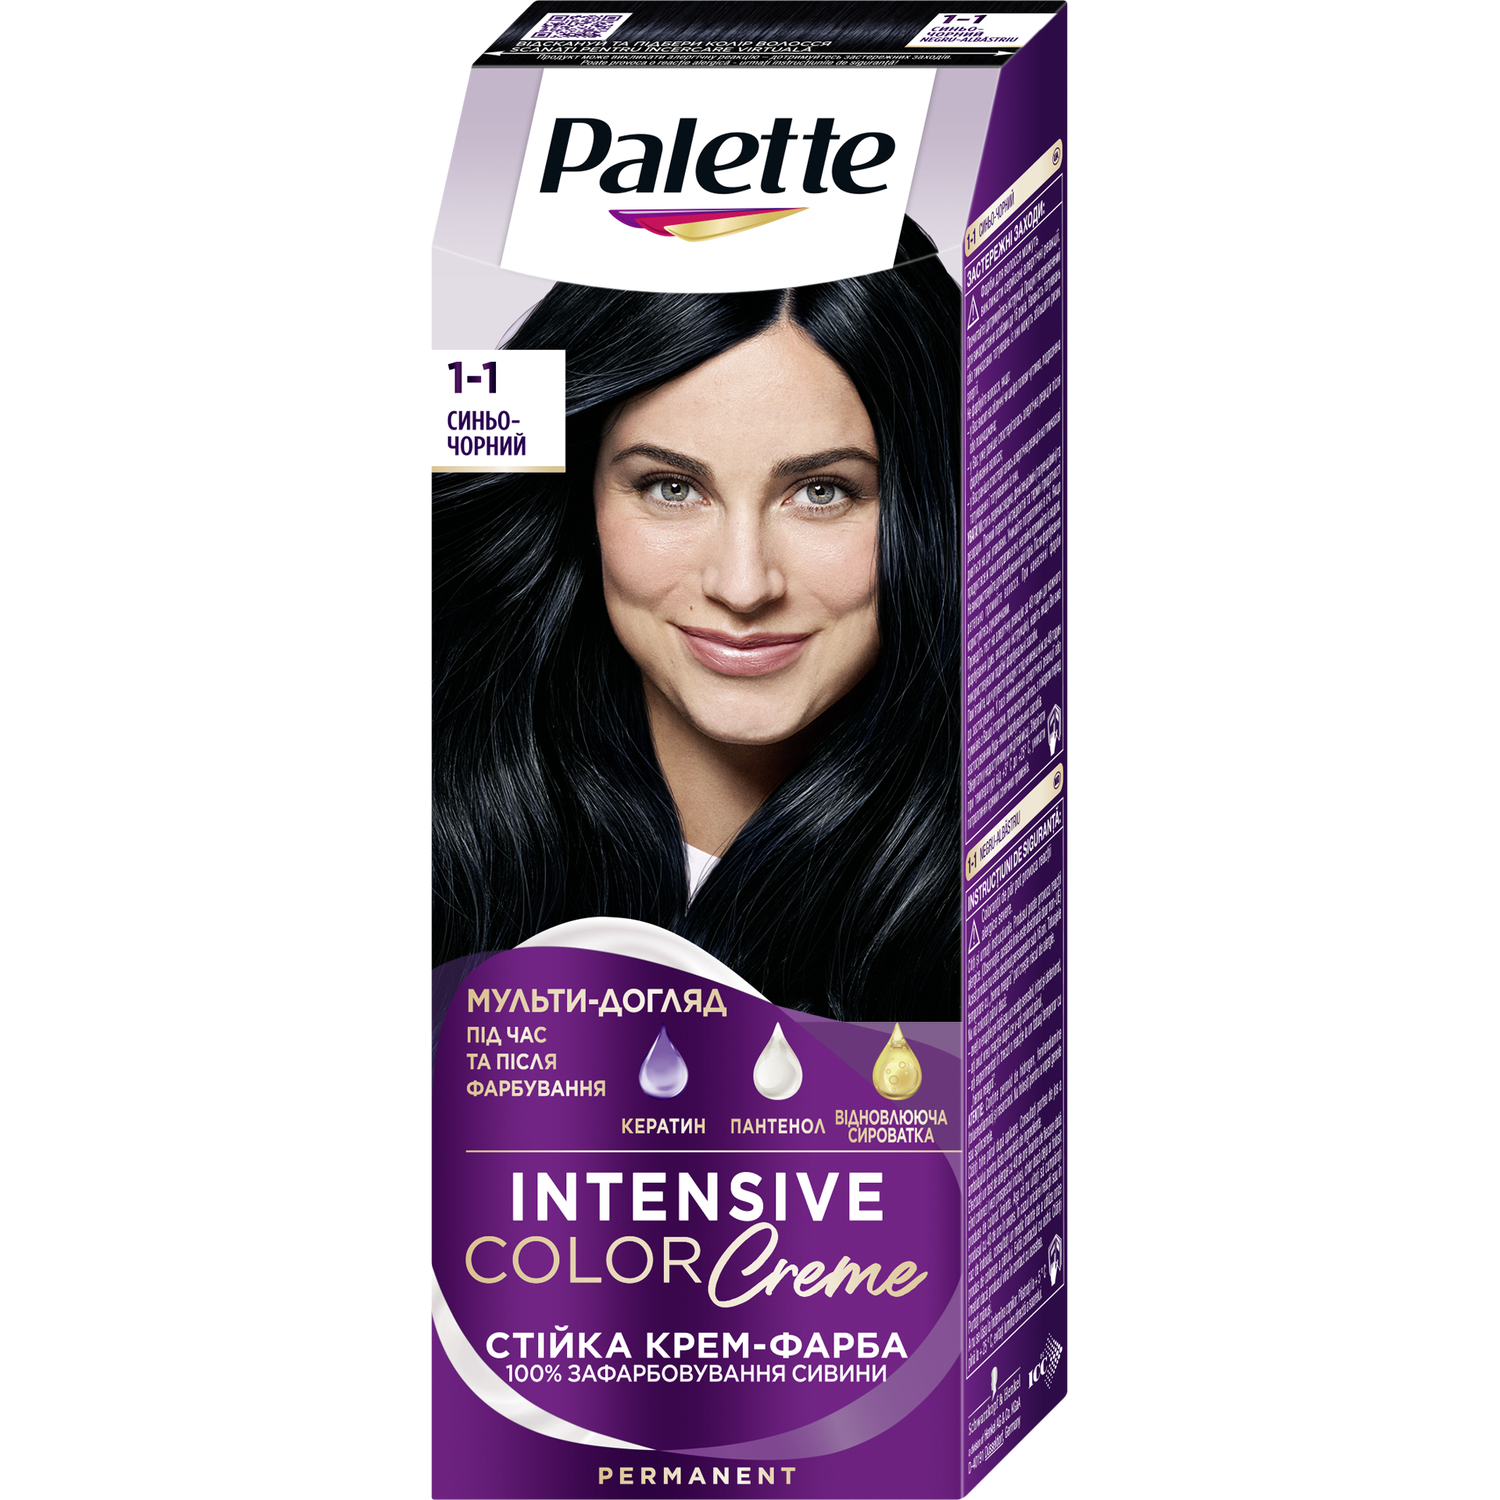 Фарба для волосся Palette ICC 1-1 Синьо-чорний 110 мл (2031468) - фото 1